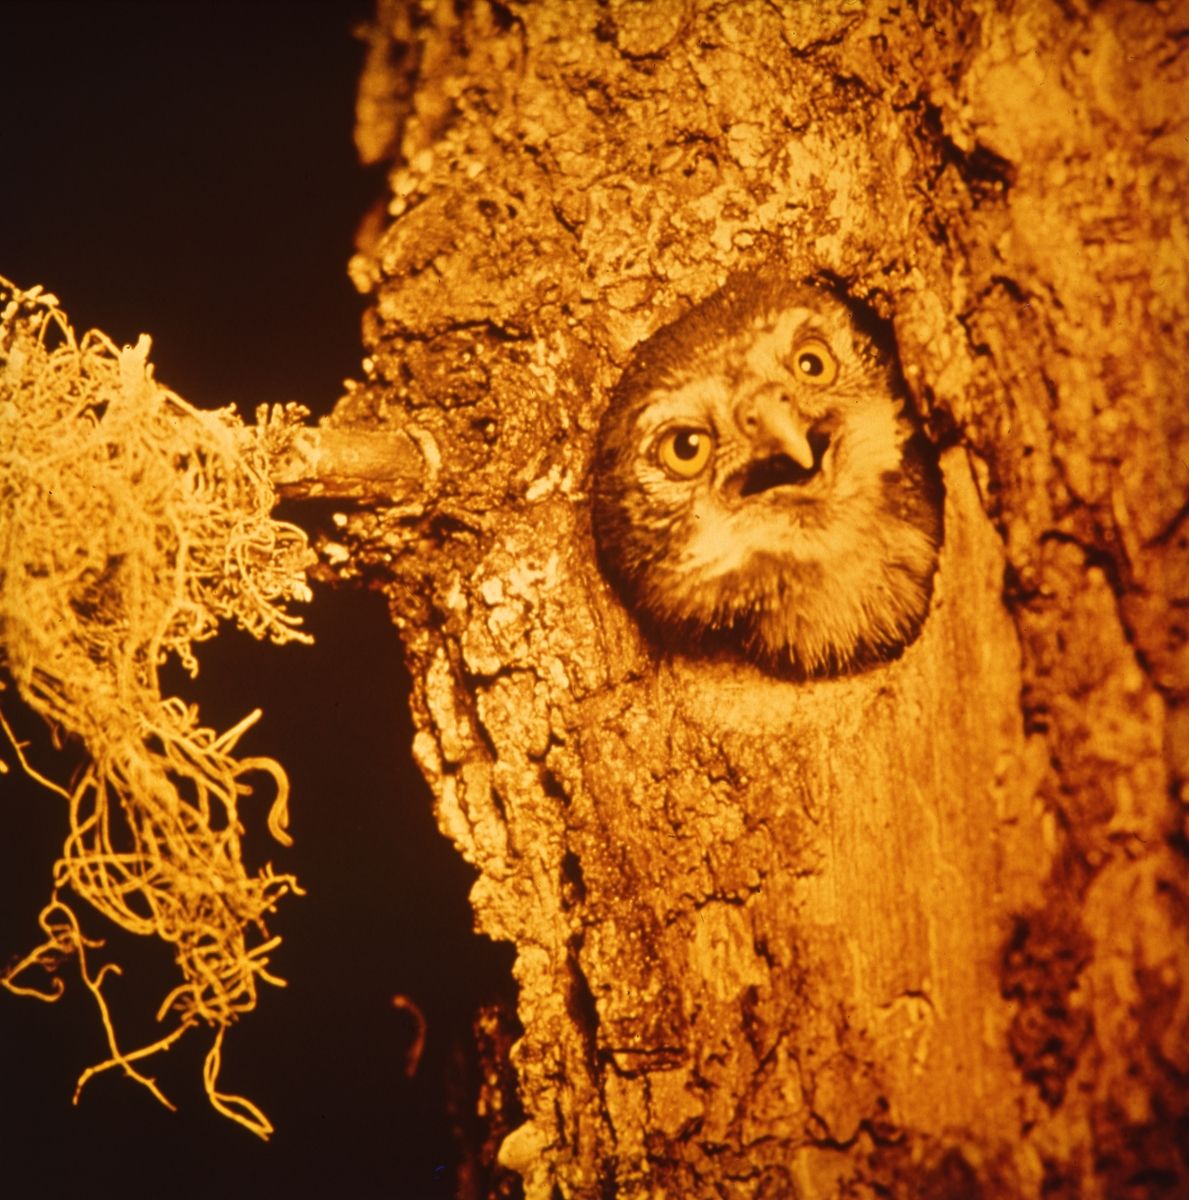 En uggla tittar ut ur sitt bohål i en trädstam.